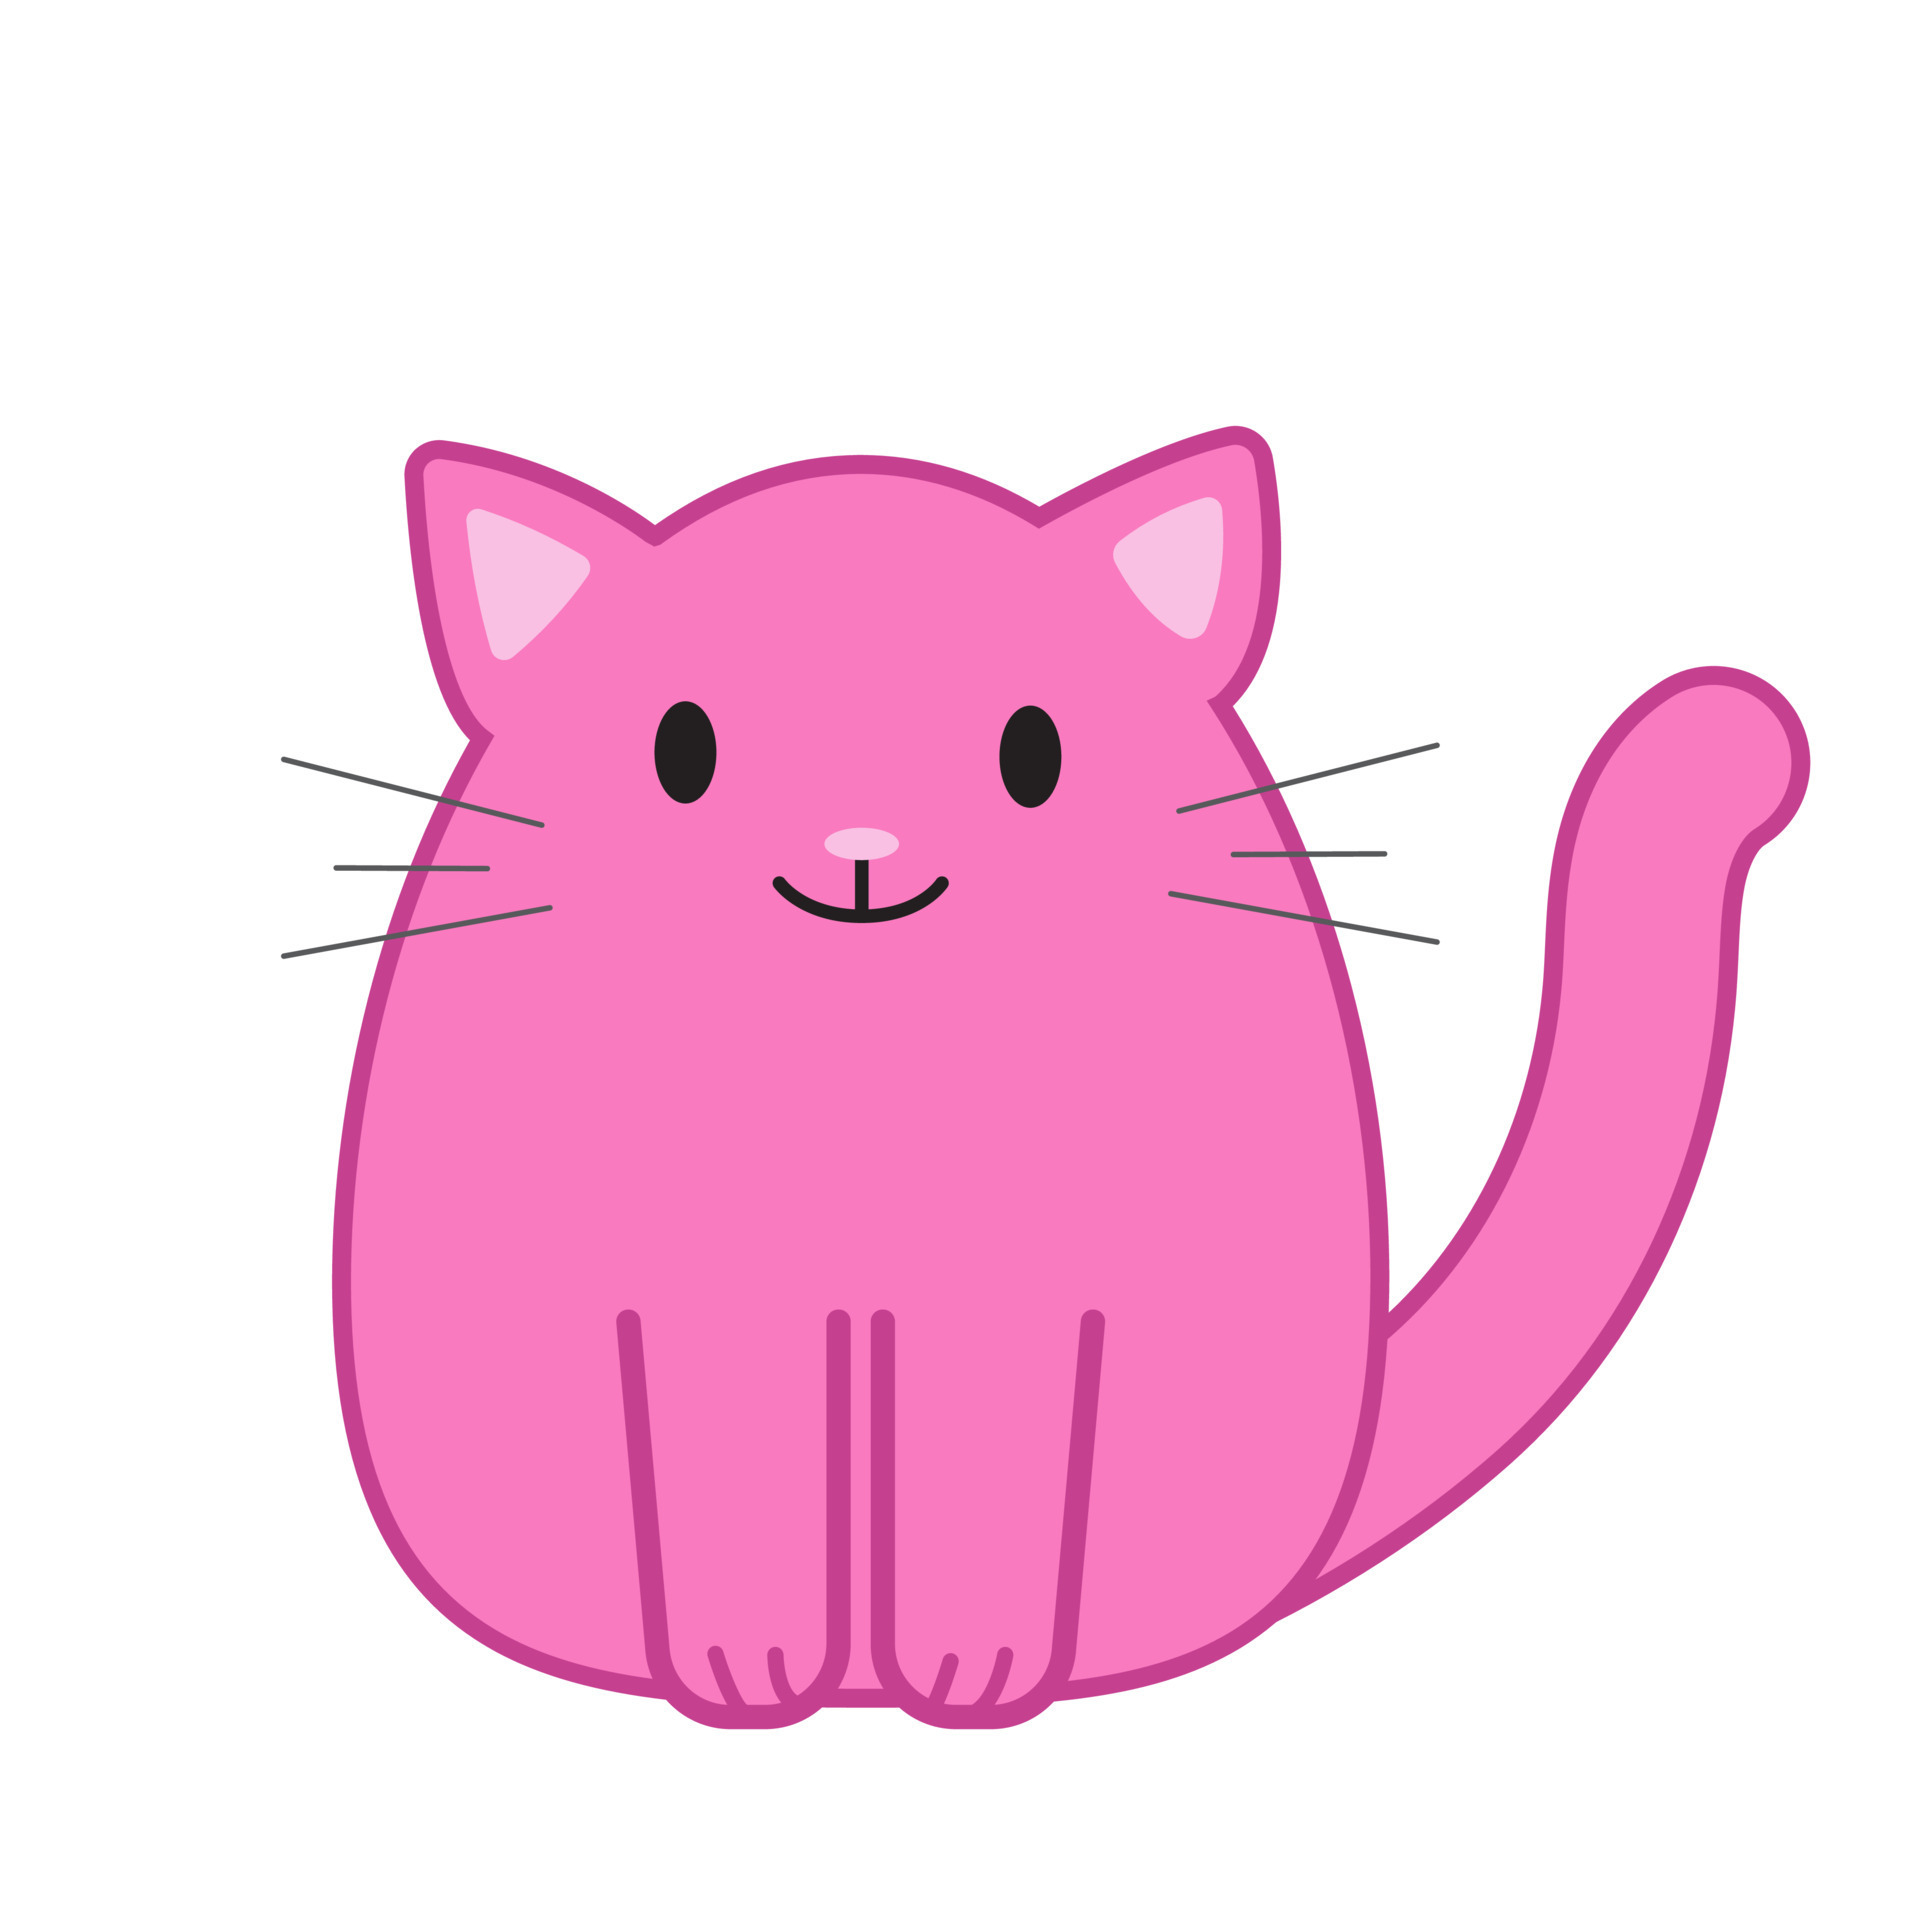 Desenho Animado De Gato. Vetor De Clipart De Gatos Ilustração do